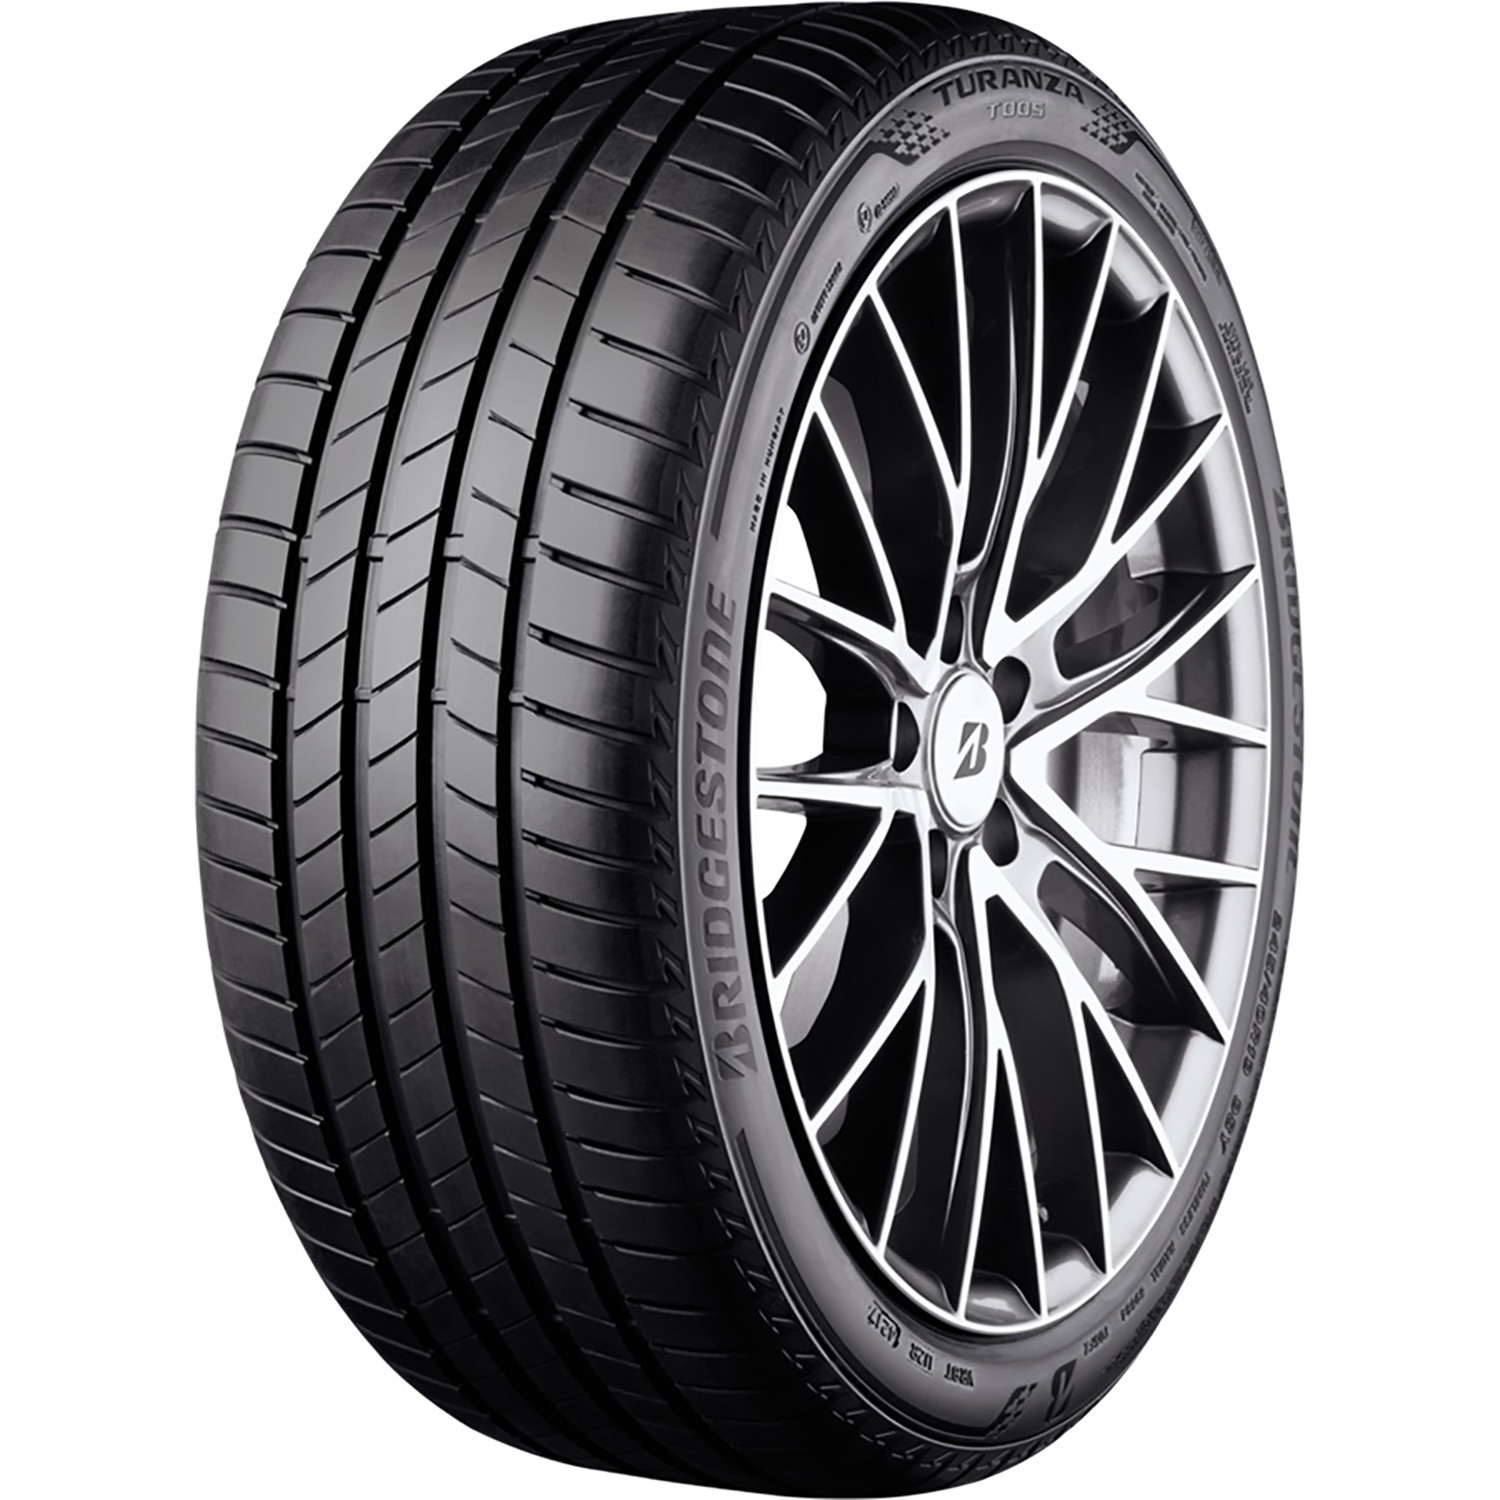 Автомобильная шина Bridgestone TURANZA T005 DRIVEGUARD Run Flat 245/40 R18 97Y turanza t005 245 45 r18 100y